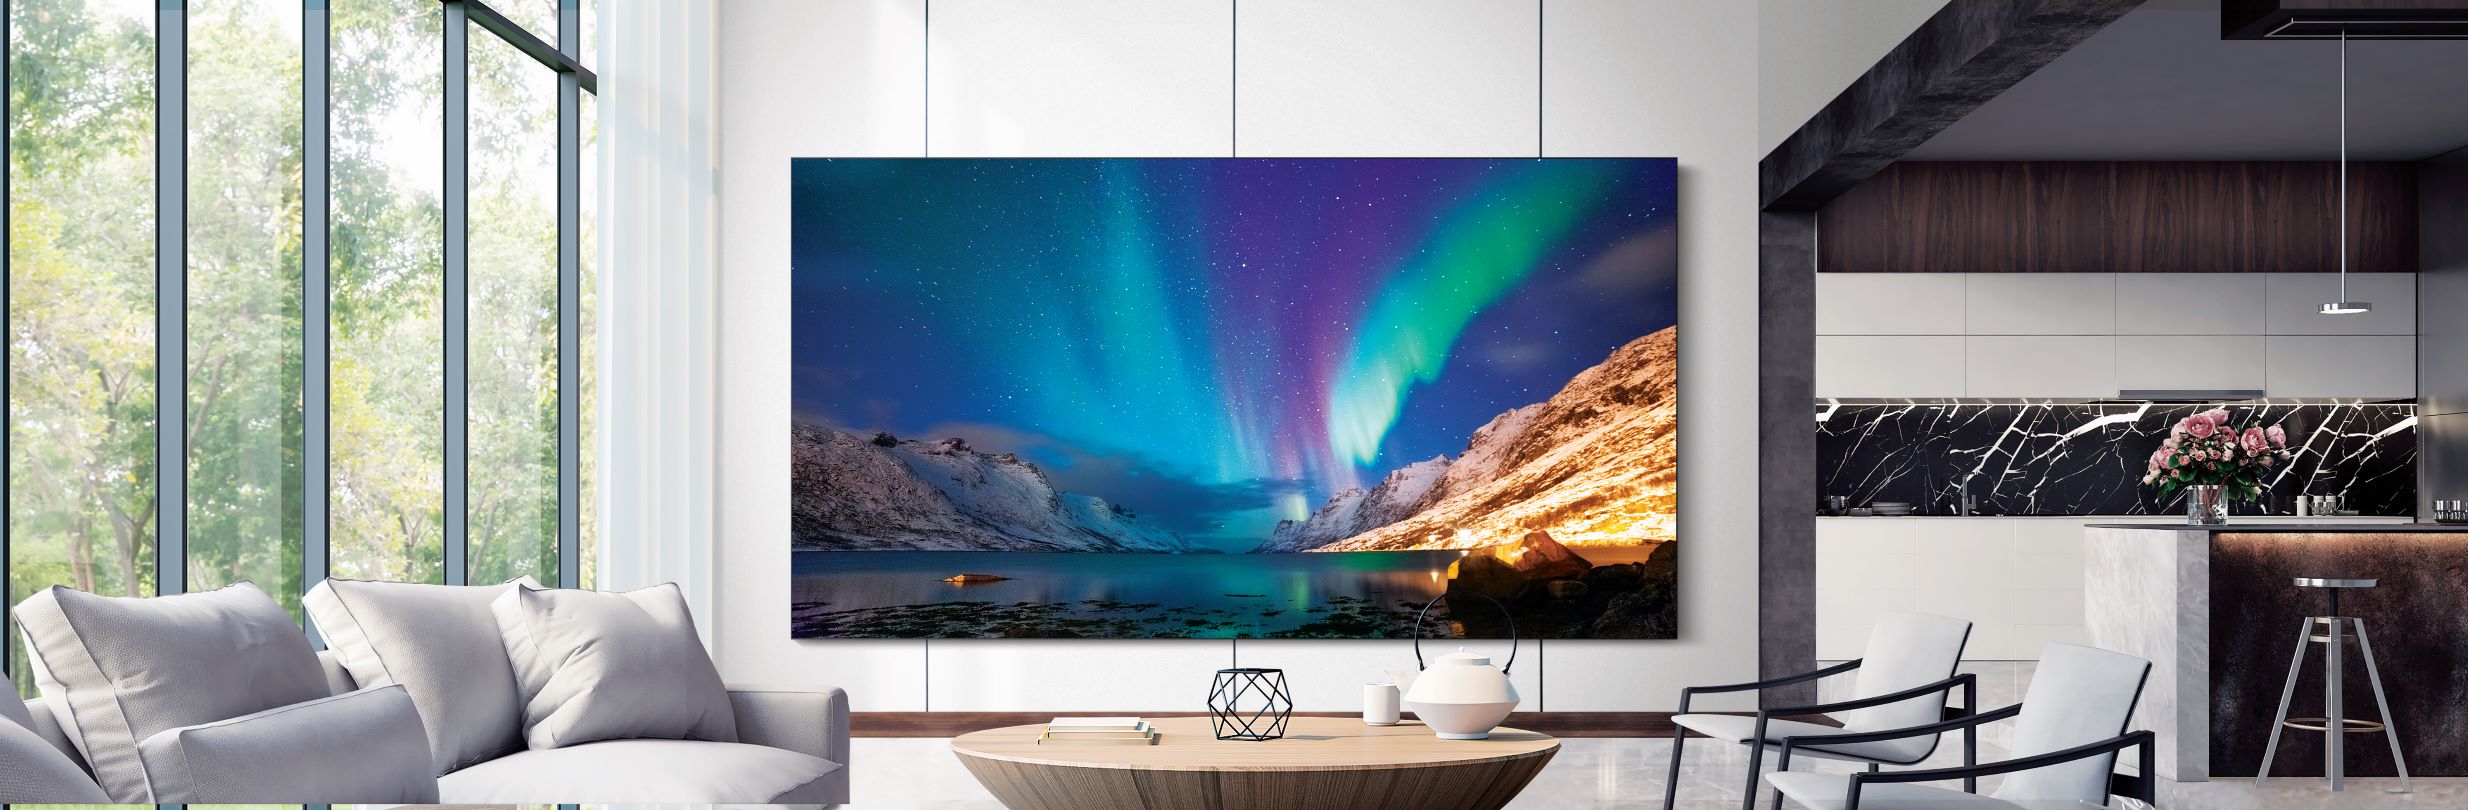 Samsung anuncia novas linhas de TVs MicroLED, QLED 8K e Lifestyle